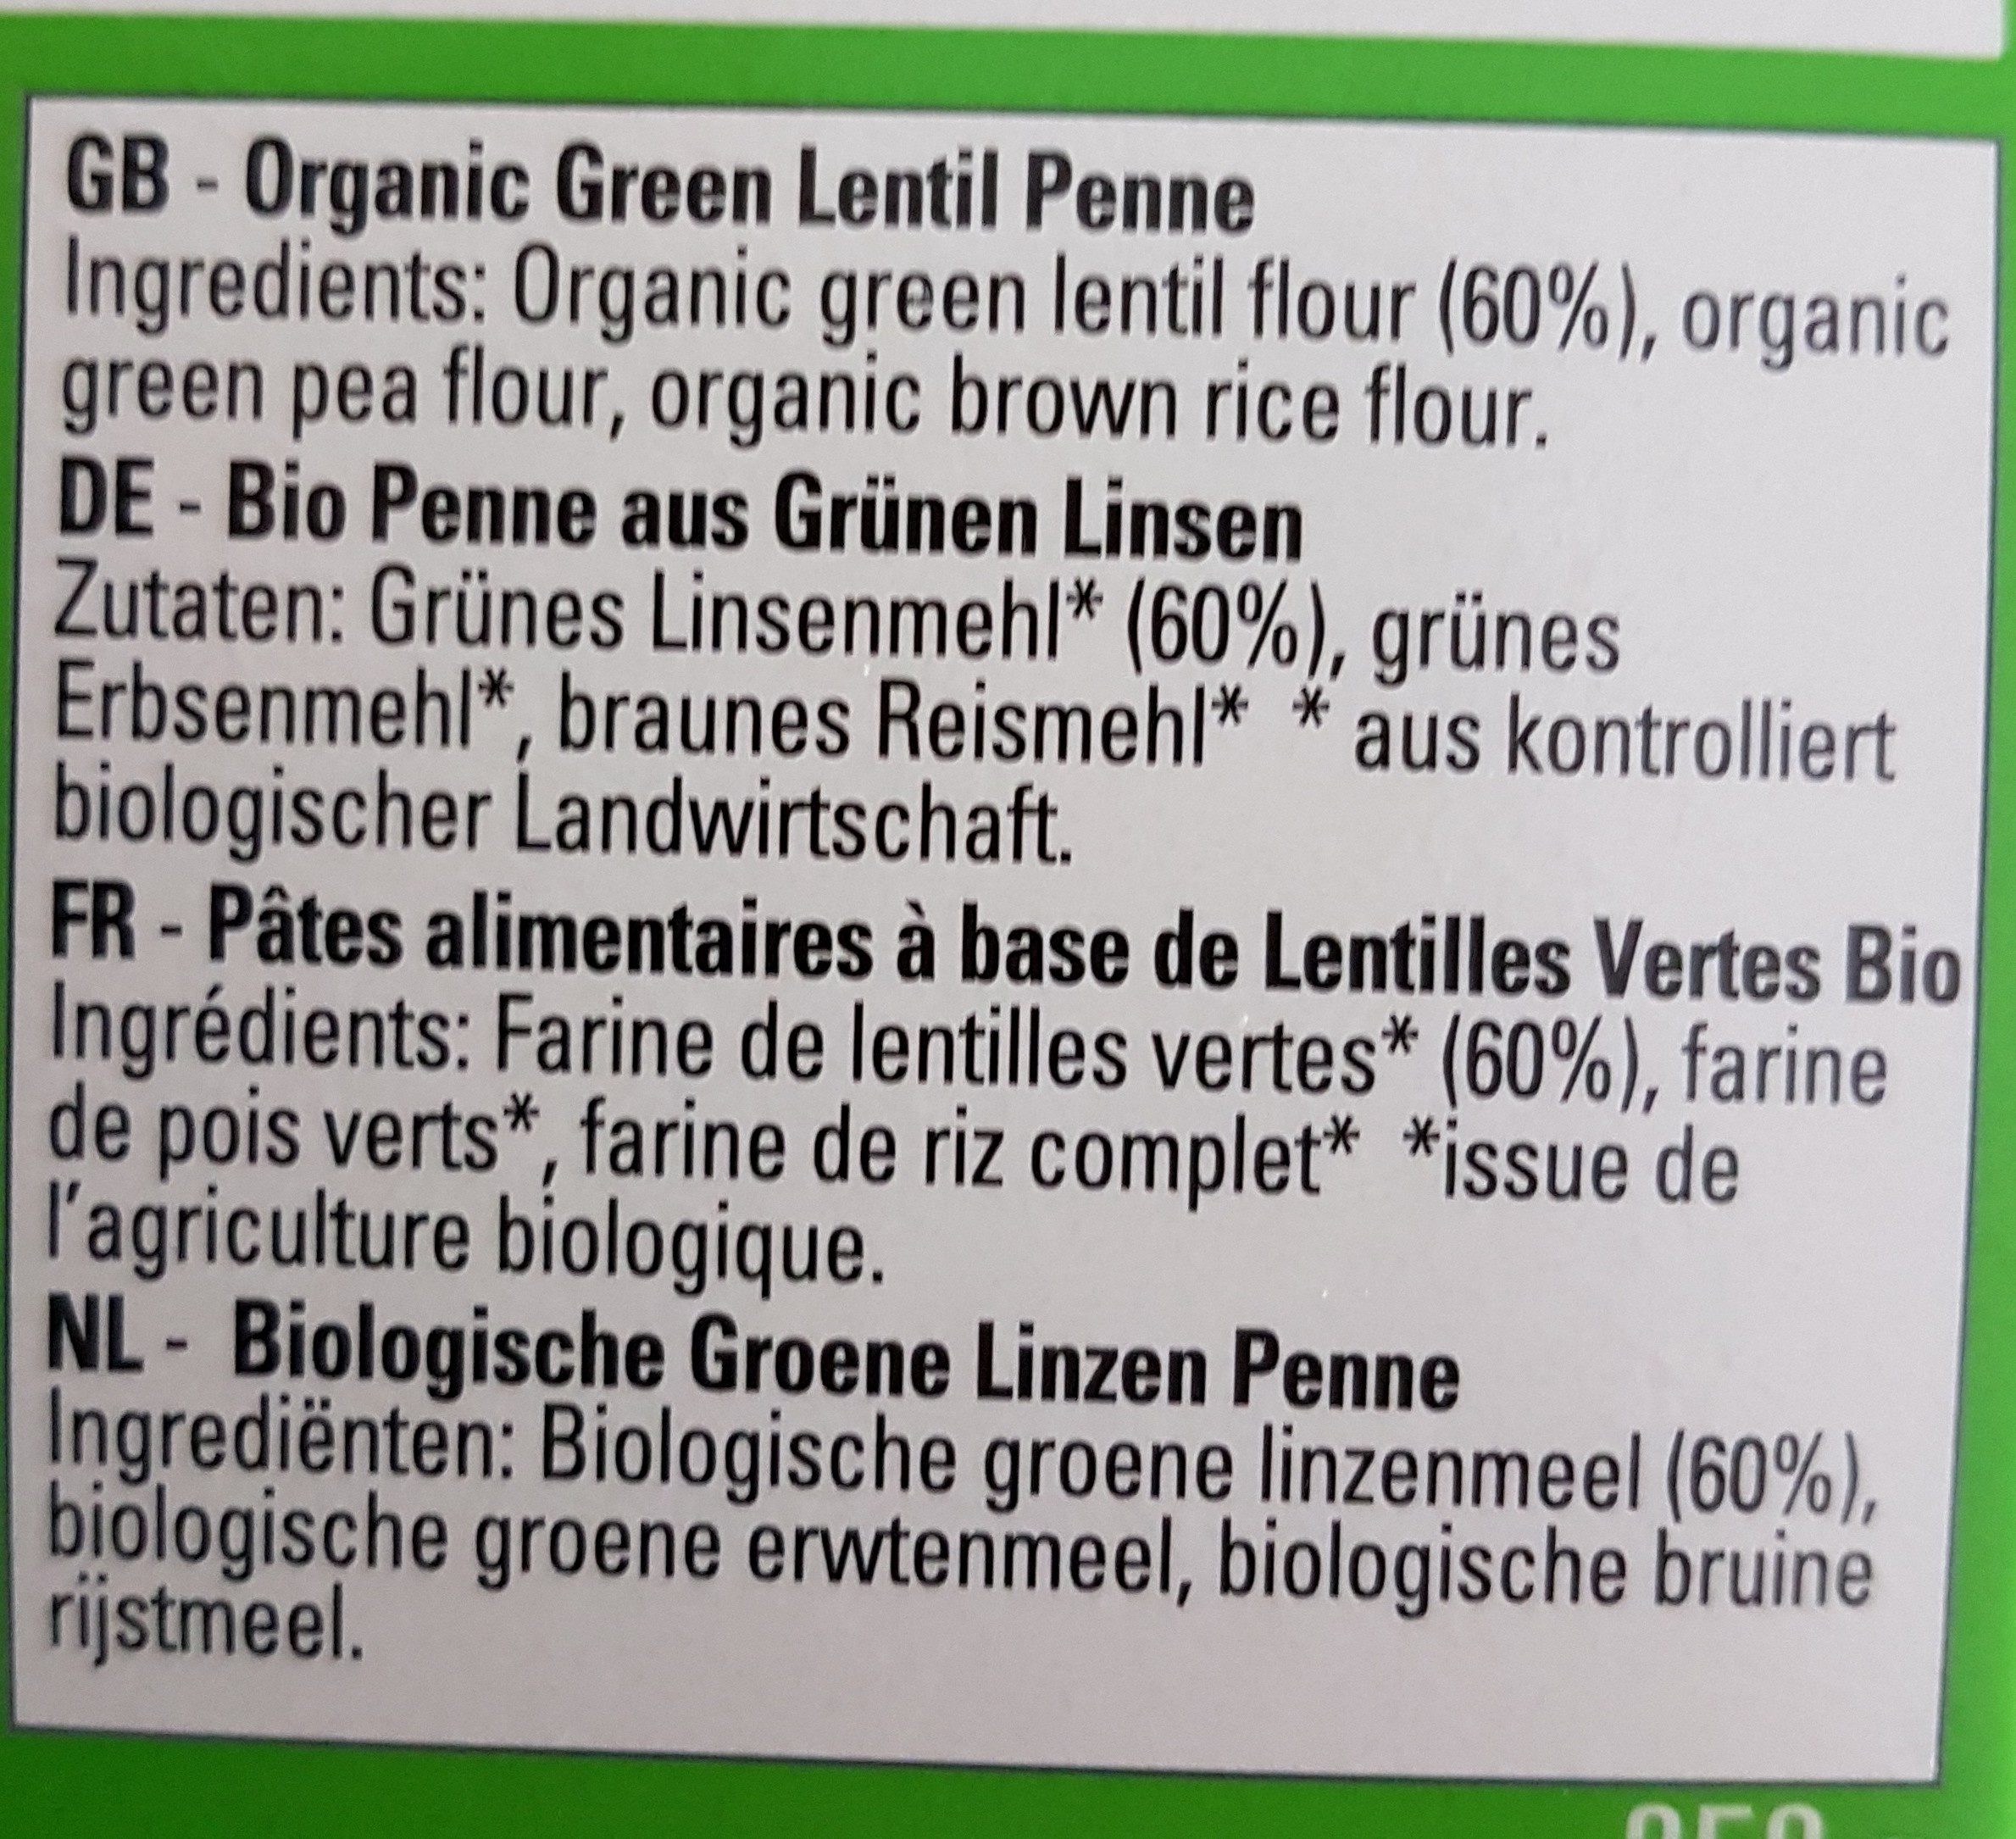 green lentil penne - Ingredients - fr